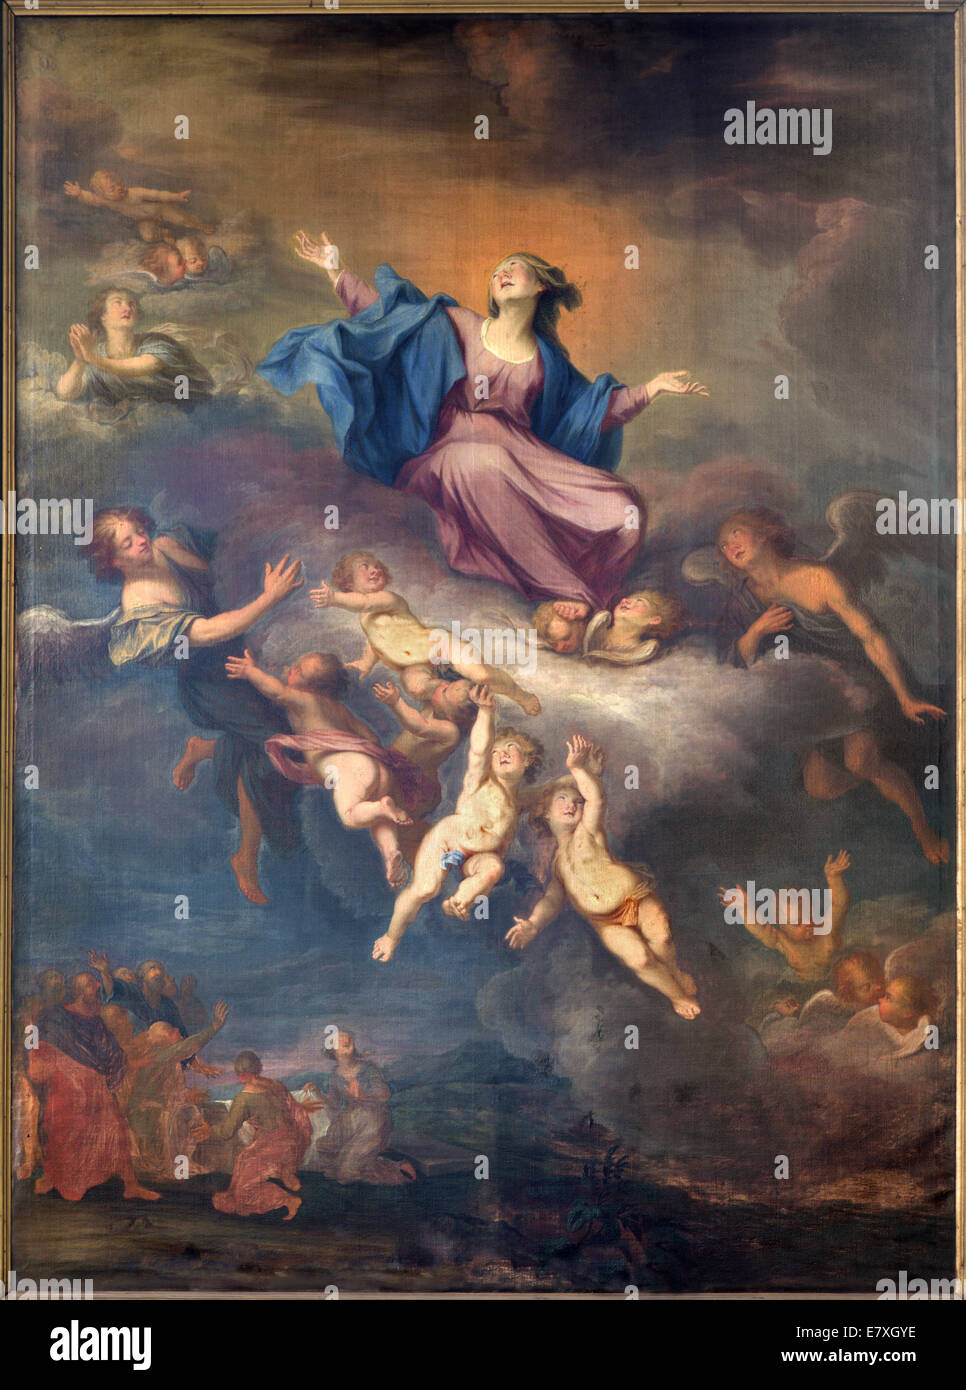 BRUGES, BELGIQUE - 12 juin 2014 : l'hypothèse de la Vierge Marie par M. Vanduvene du 17. 100. à st. Jacobs (Jakobskerk l'église). Banque D'Images